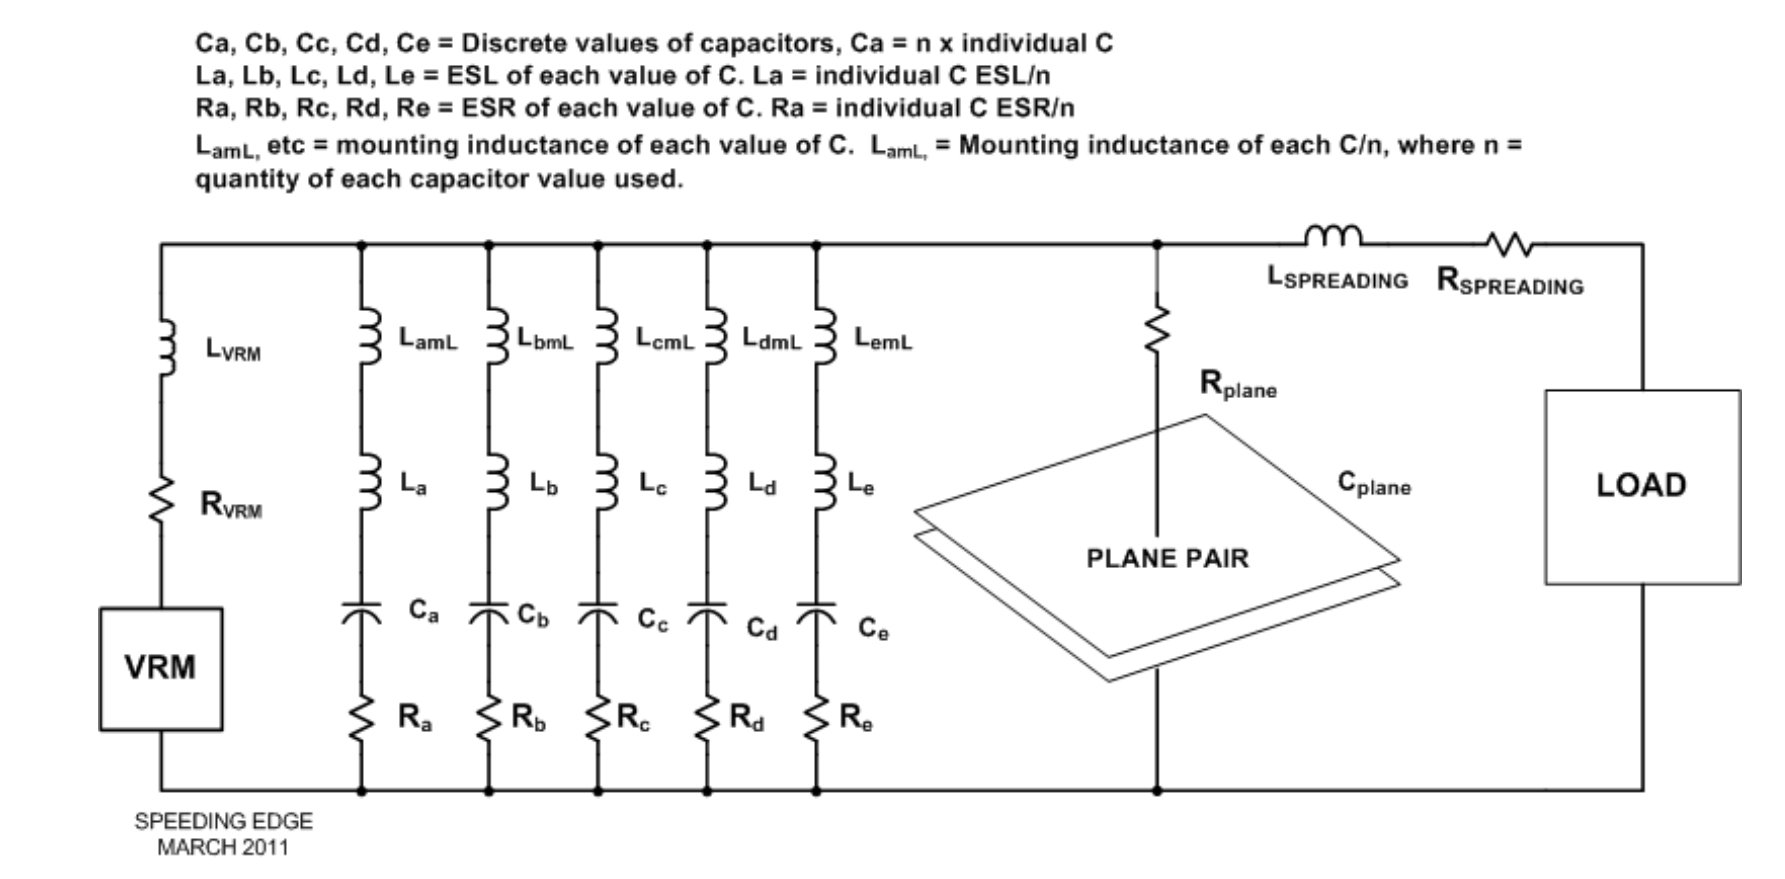 PDS design schematic